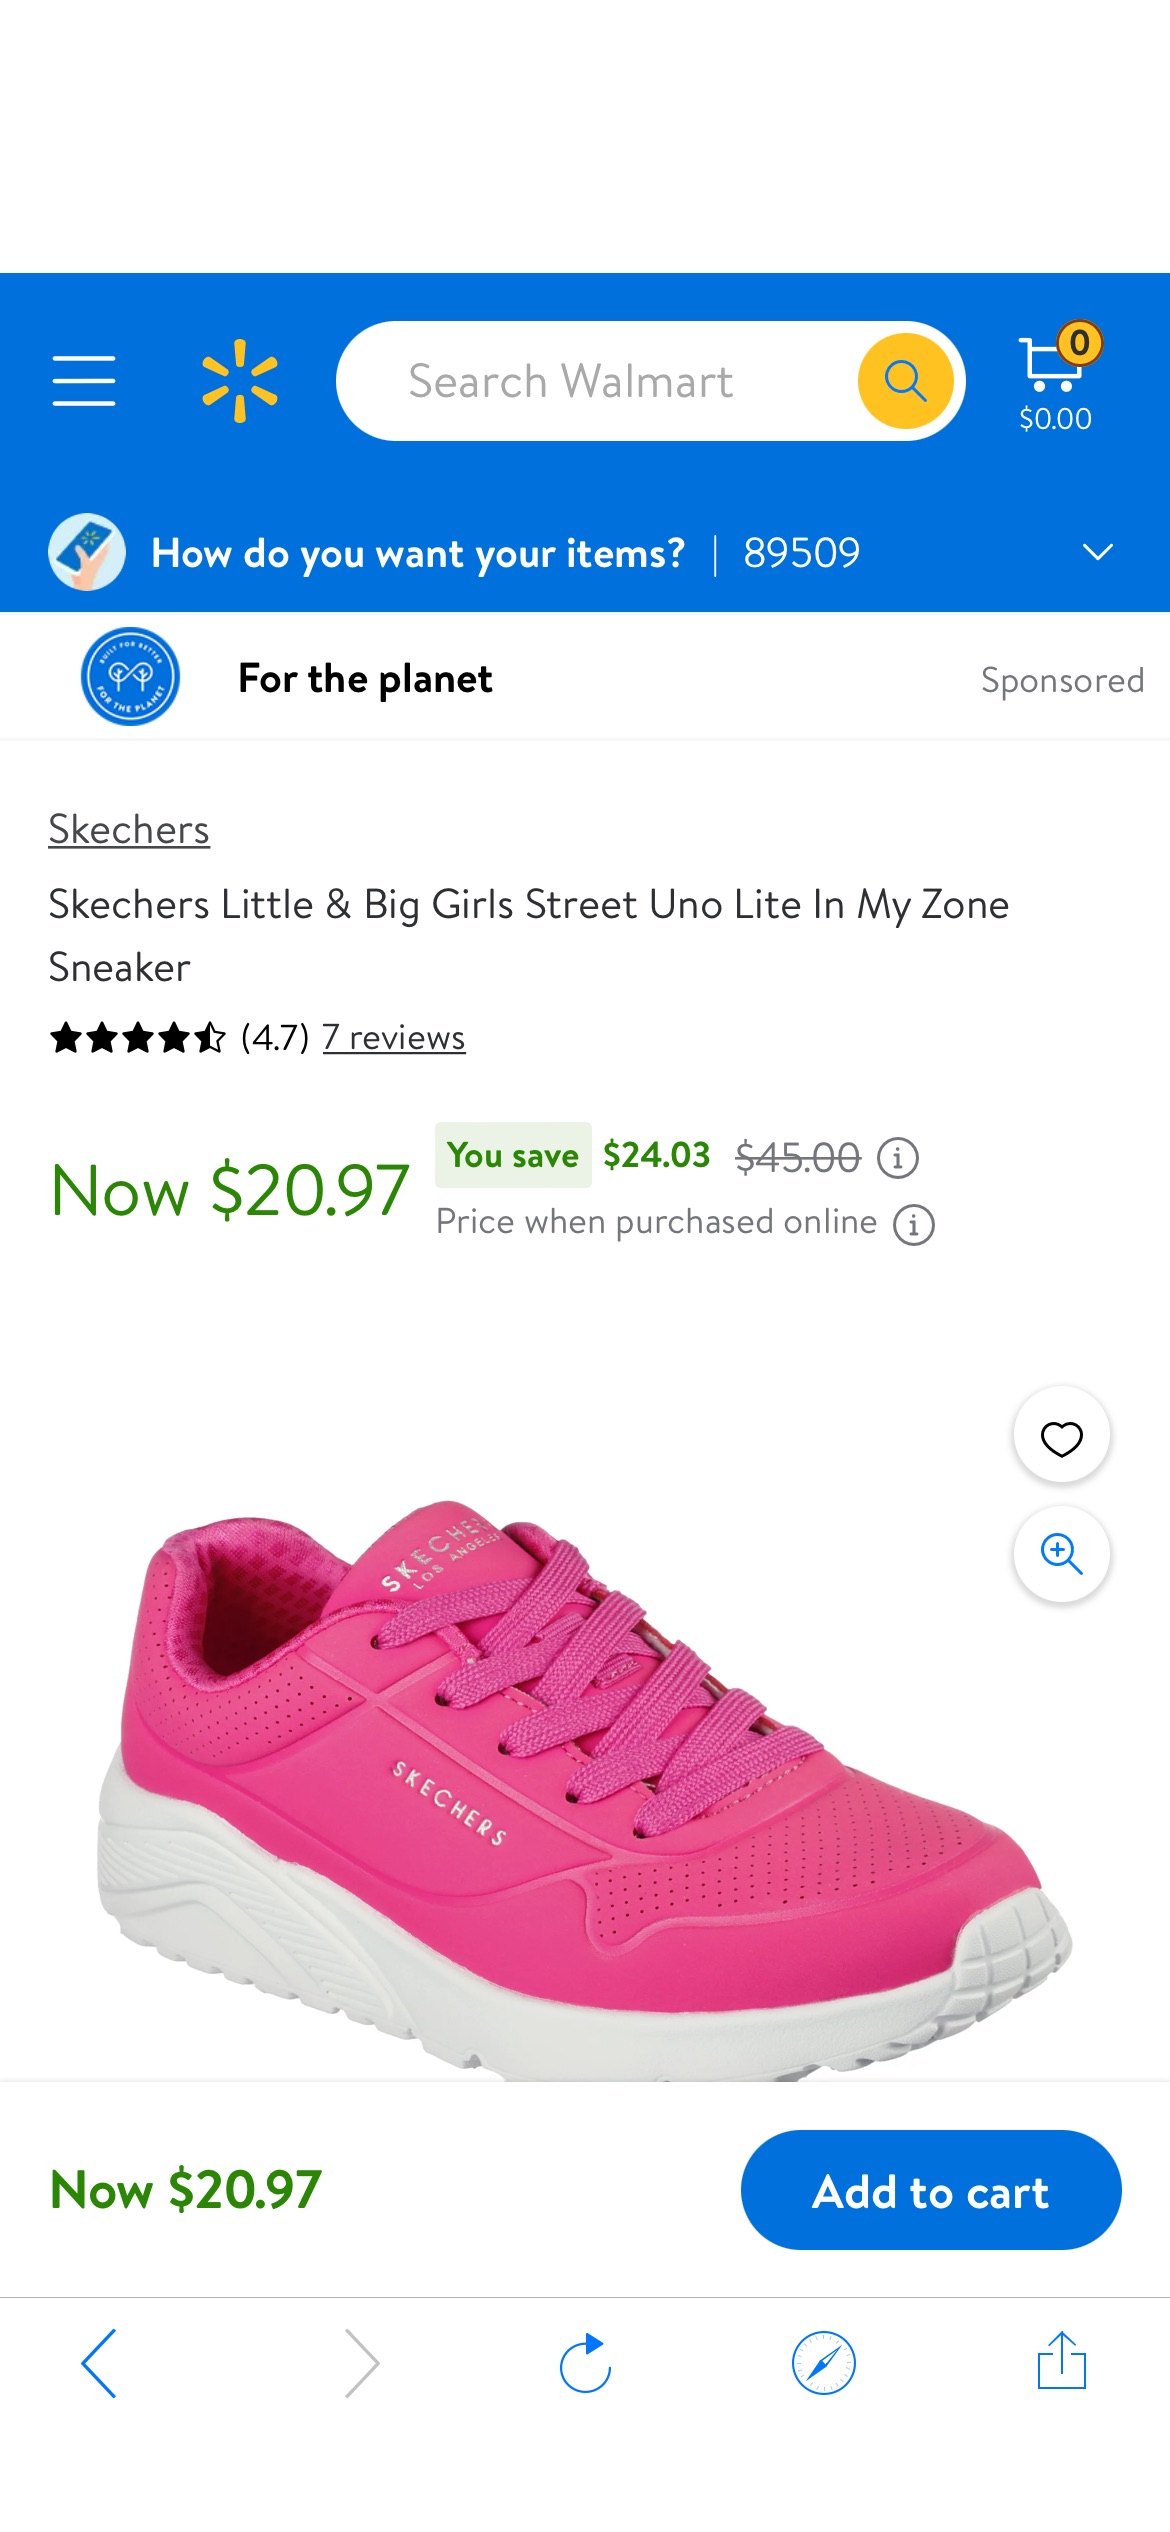 Skechers Little & Big Girls Street Uno Lite In My Zone Sneaker - Walmart.com女童鞋子